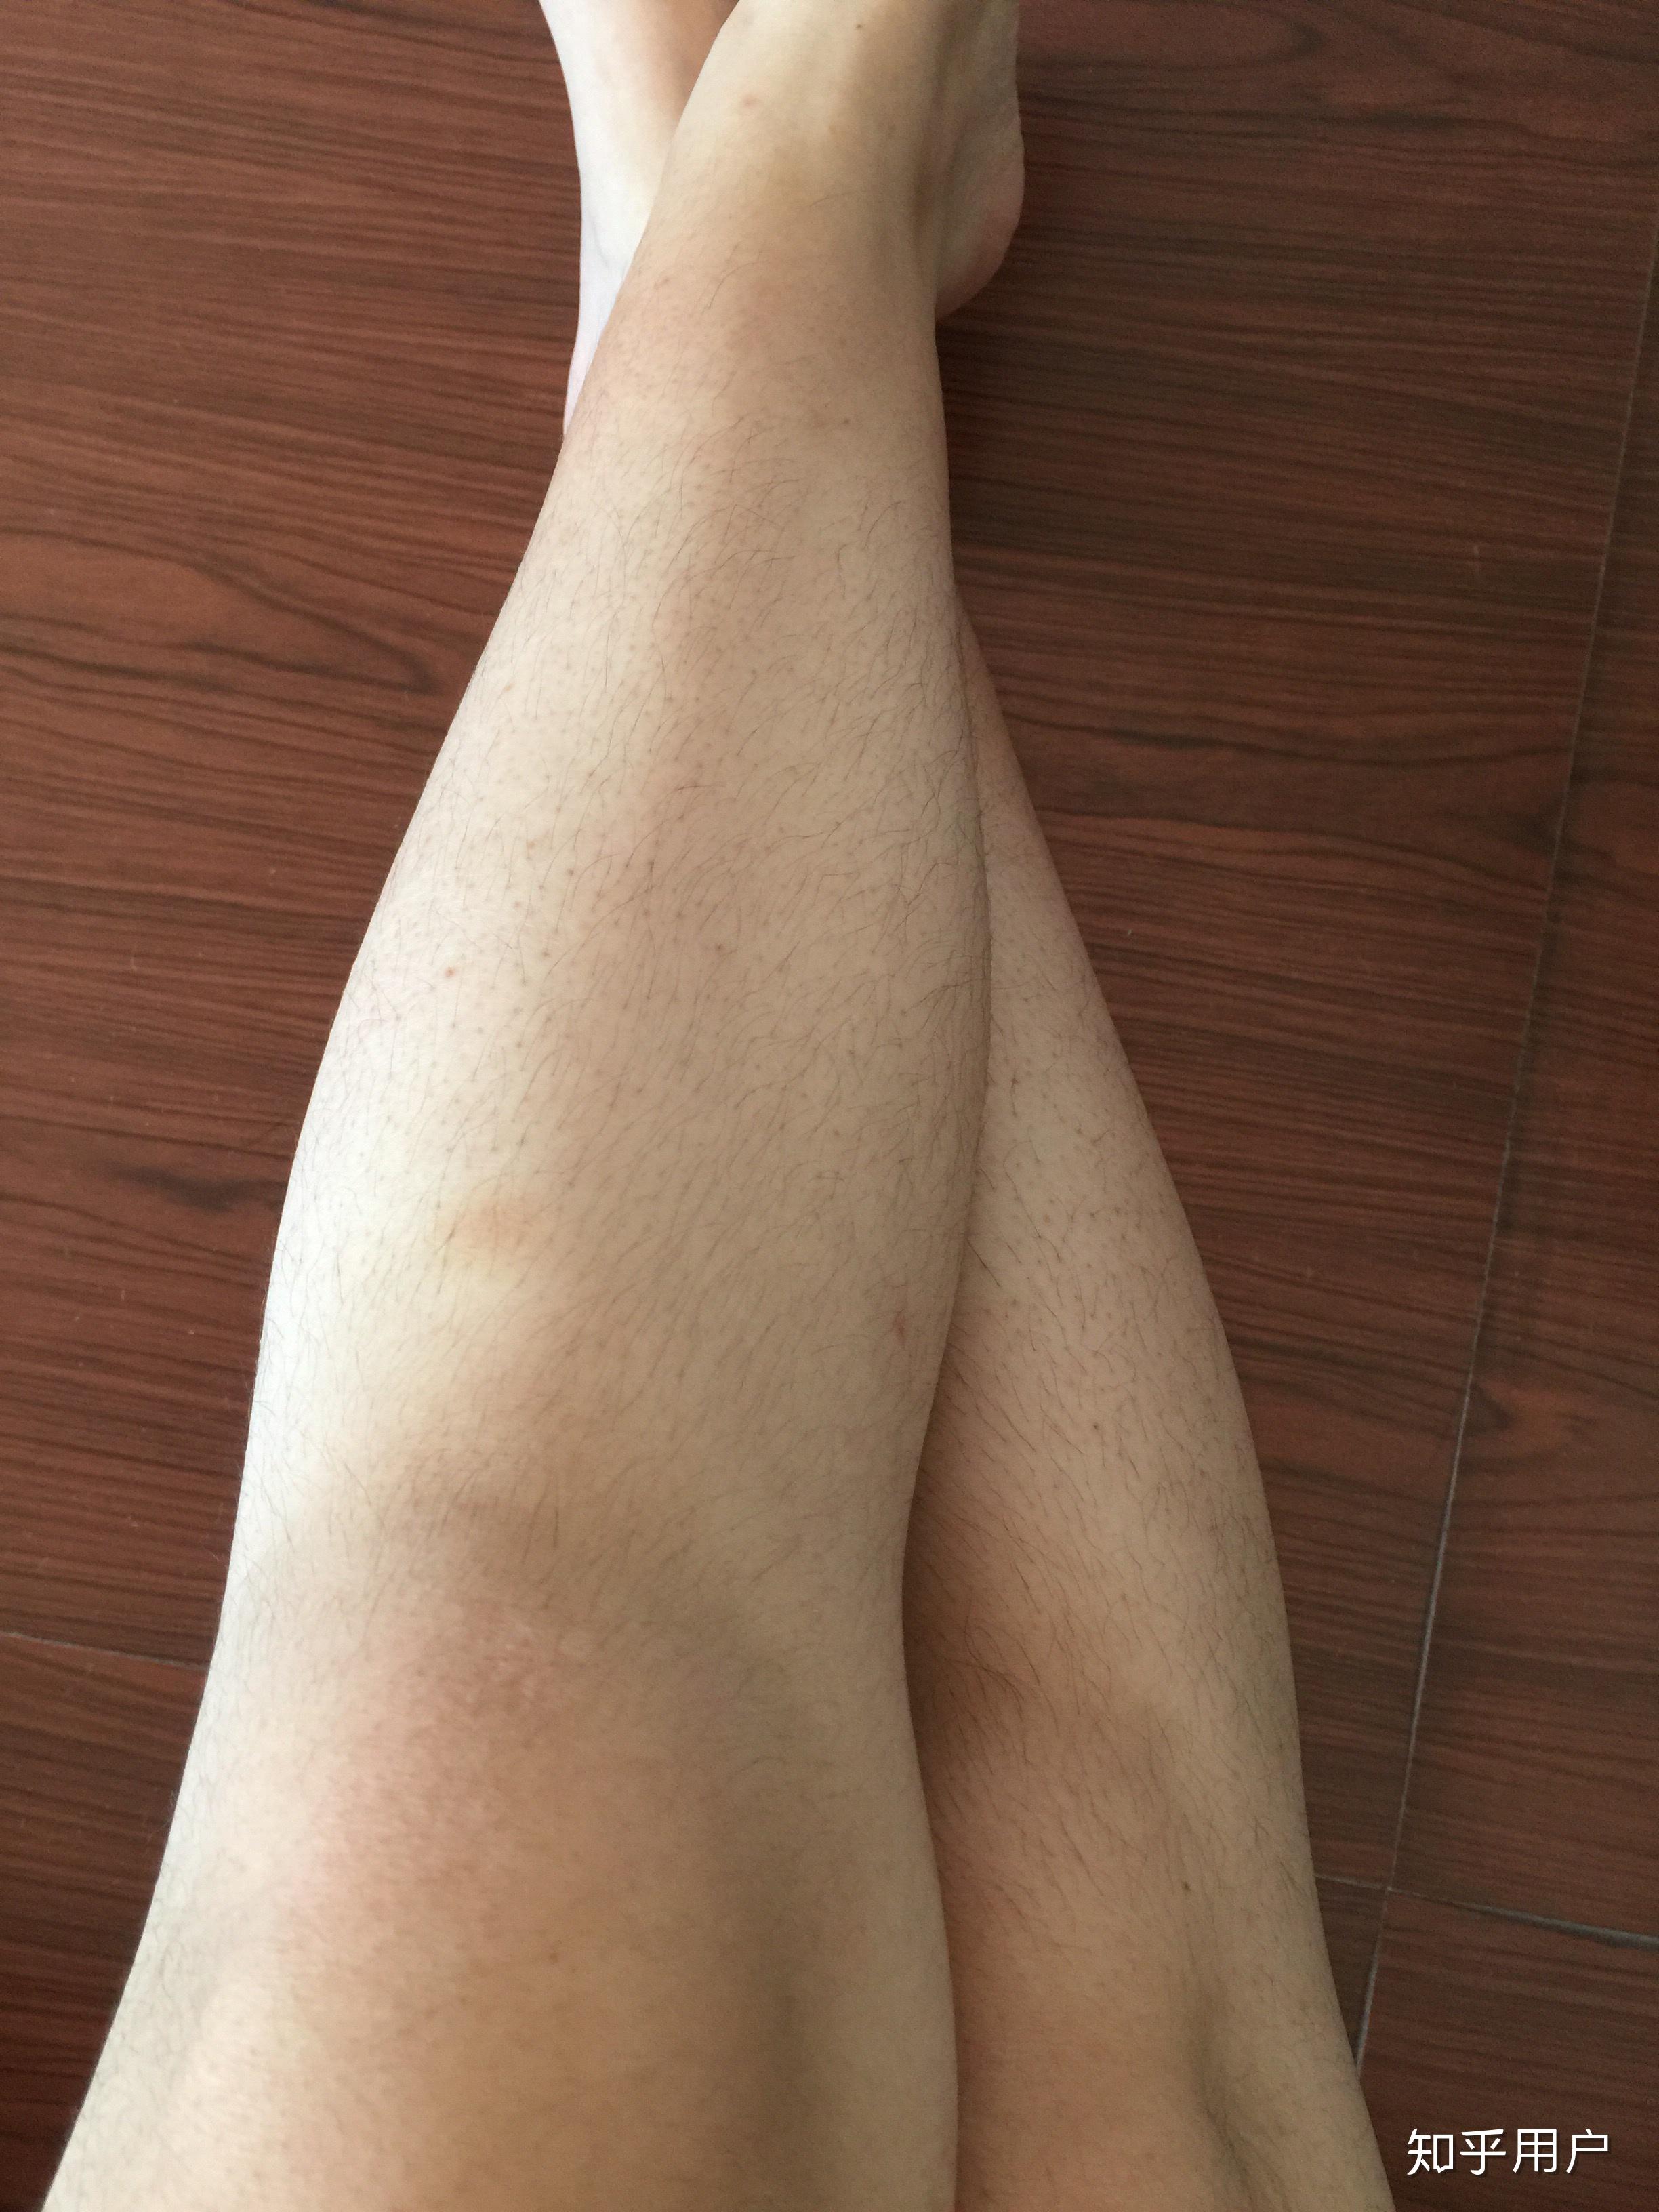 女生腿毛旺盛是怎样的人生体验